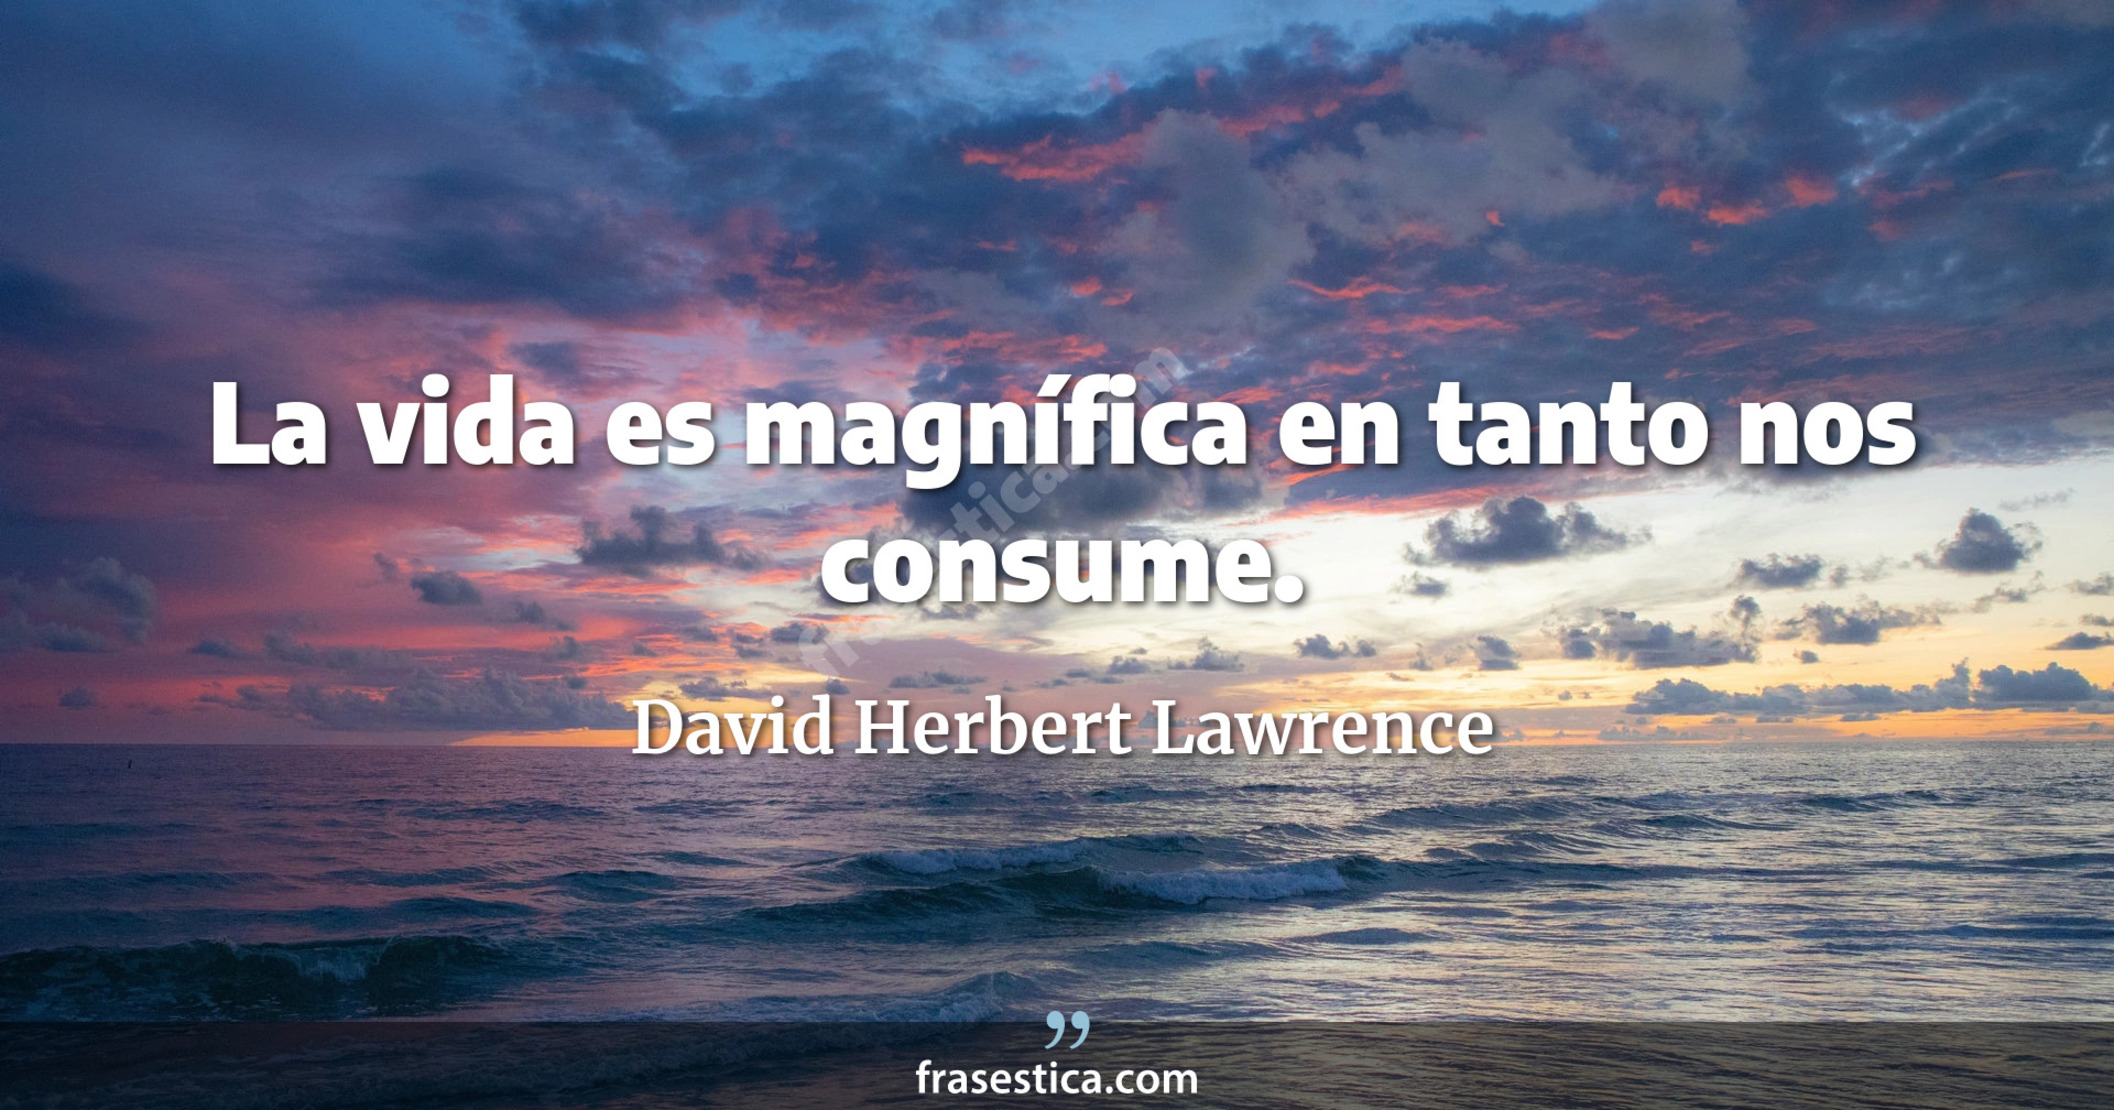 La vida es magnífica en tanto nos consume. - David Herbert Lawrence